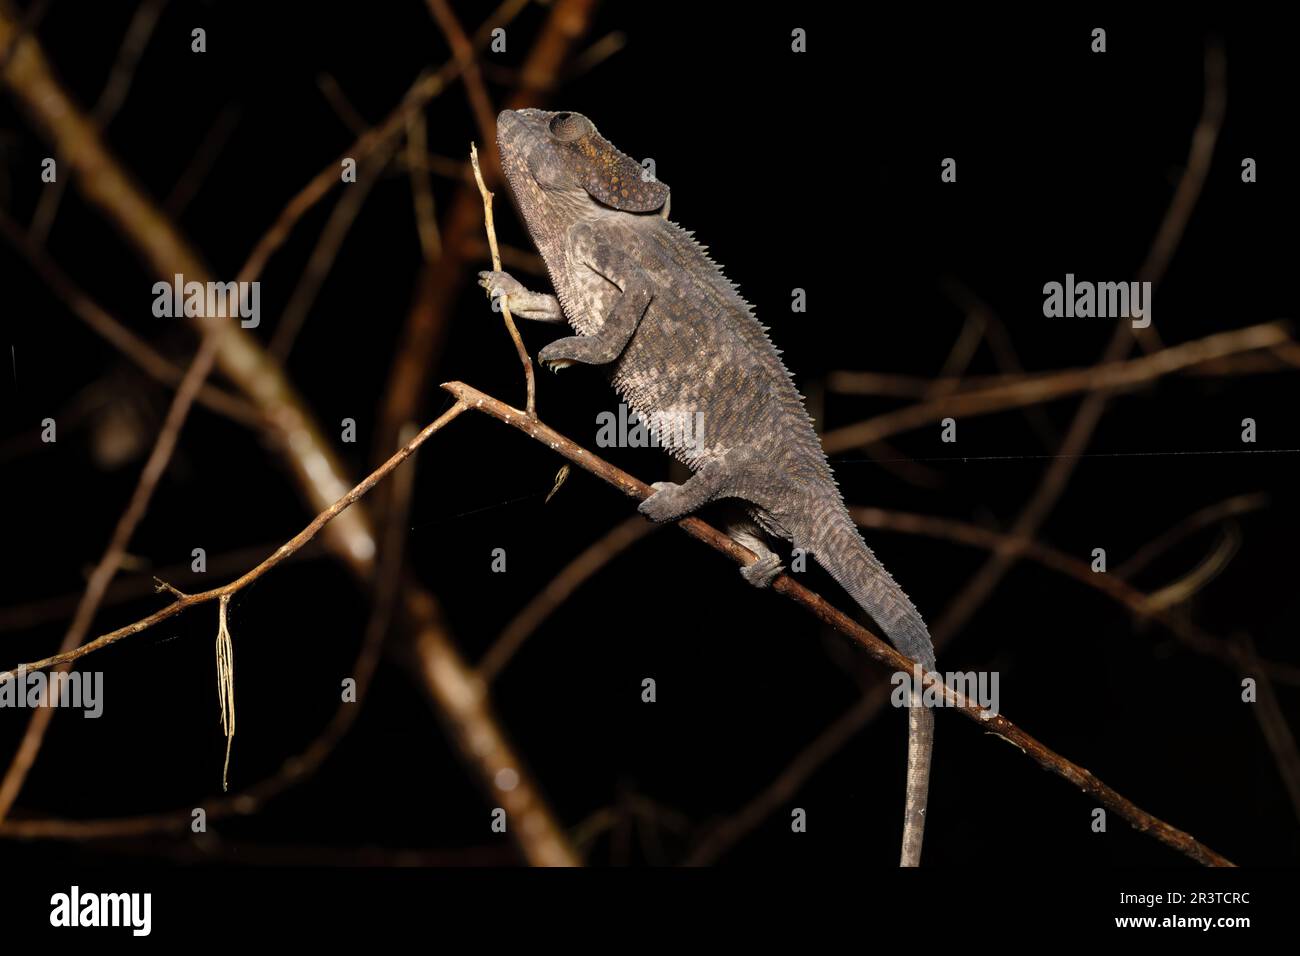 Short-horned chameleon, Calumma brevicorne, Andasibe-Mantadia National Park, Madagascar wildlife Stock Photo